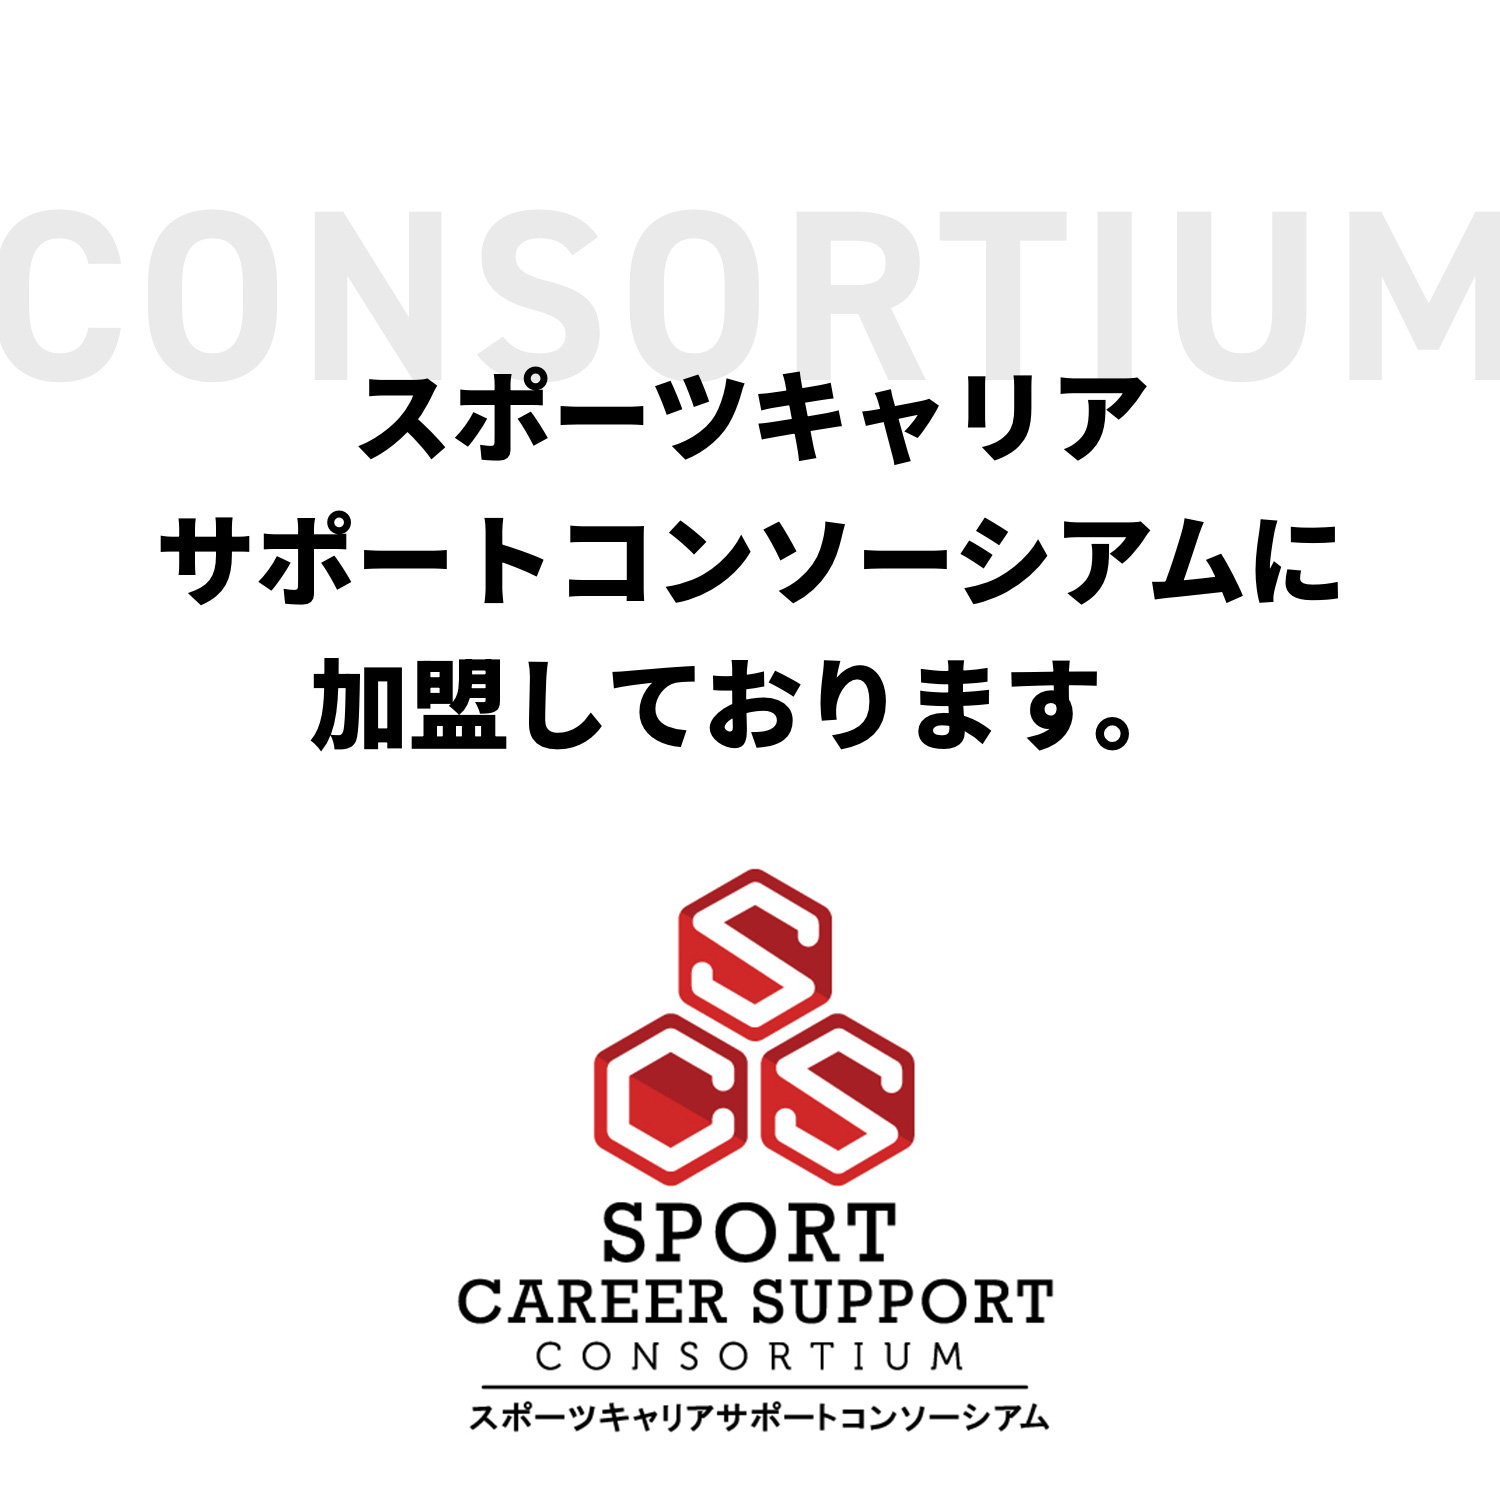 スポーツキャリアサポートコンソーシアムに加盟しております。